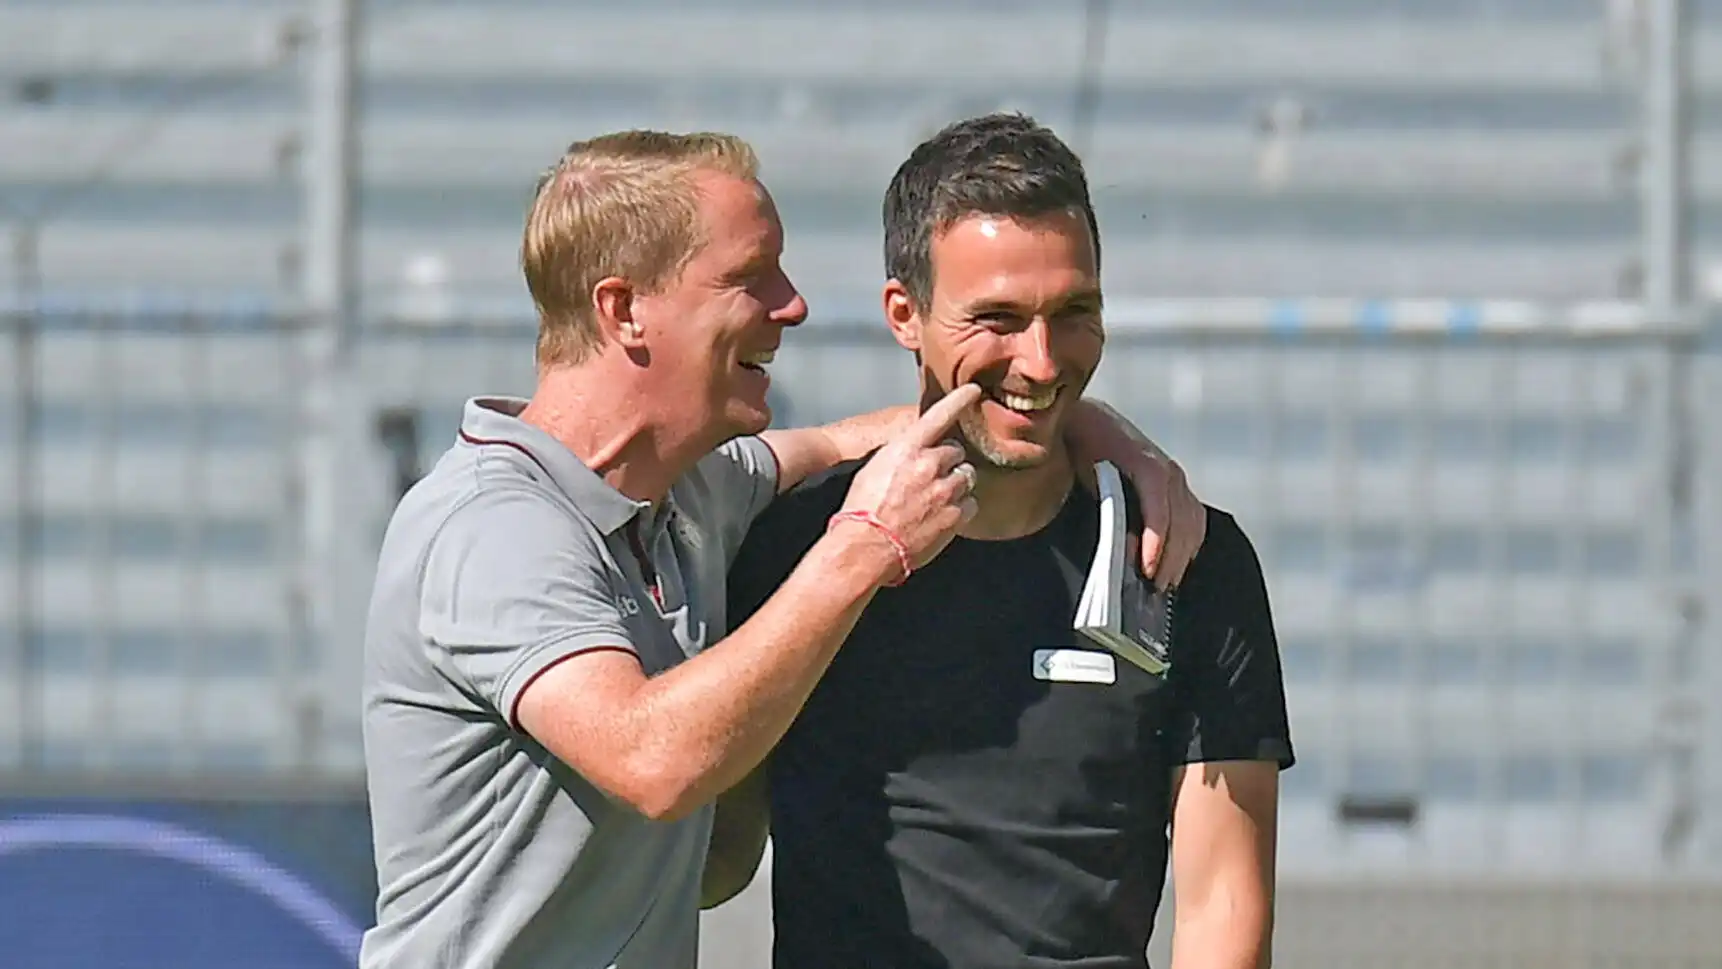 Timo Schultz und Christian Eichner trafen in der Zweiten Liga bereits aufeinander. (Foto: IMAGO / Jan Huebner)